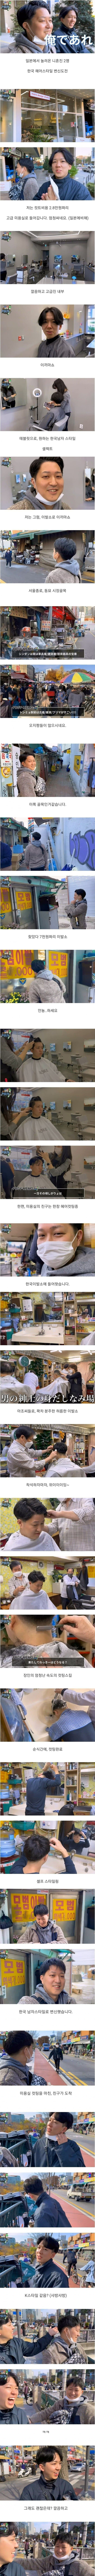 일본인들의 한국 이발소 vs 미용실 체험기.jpg